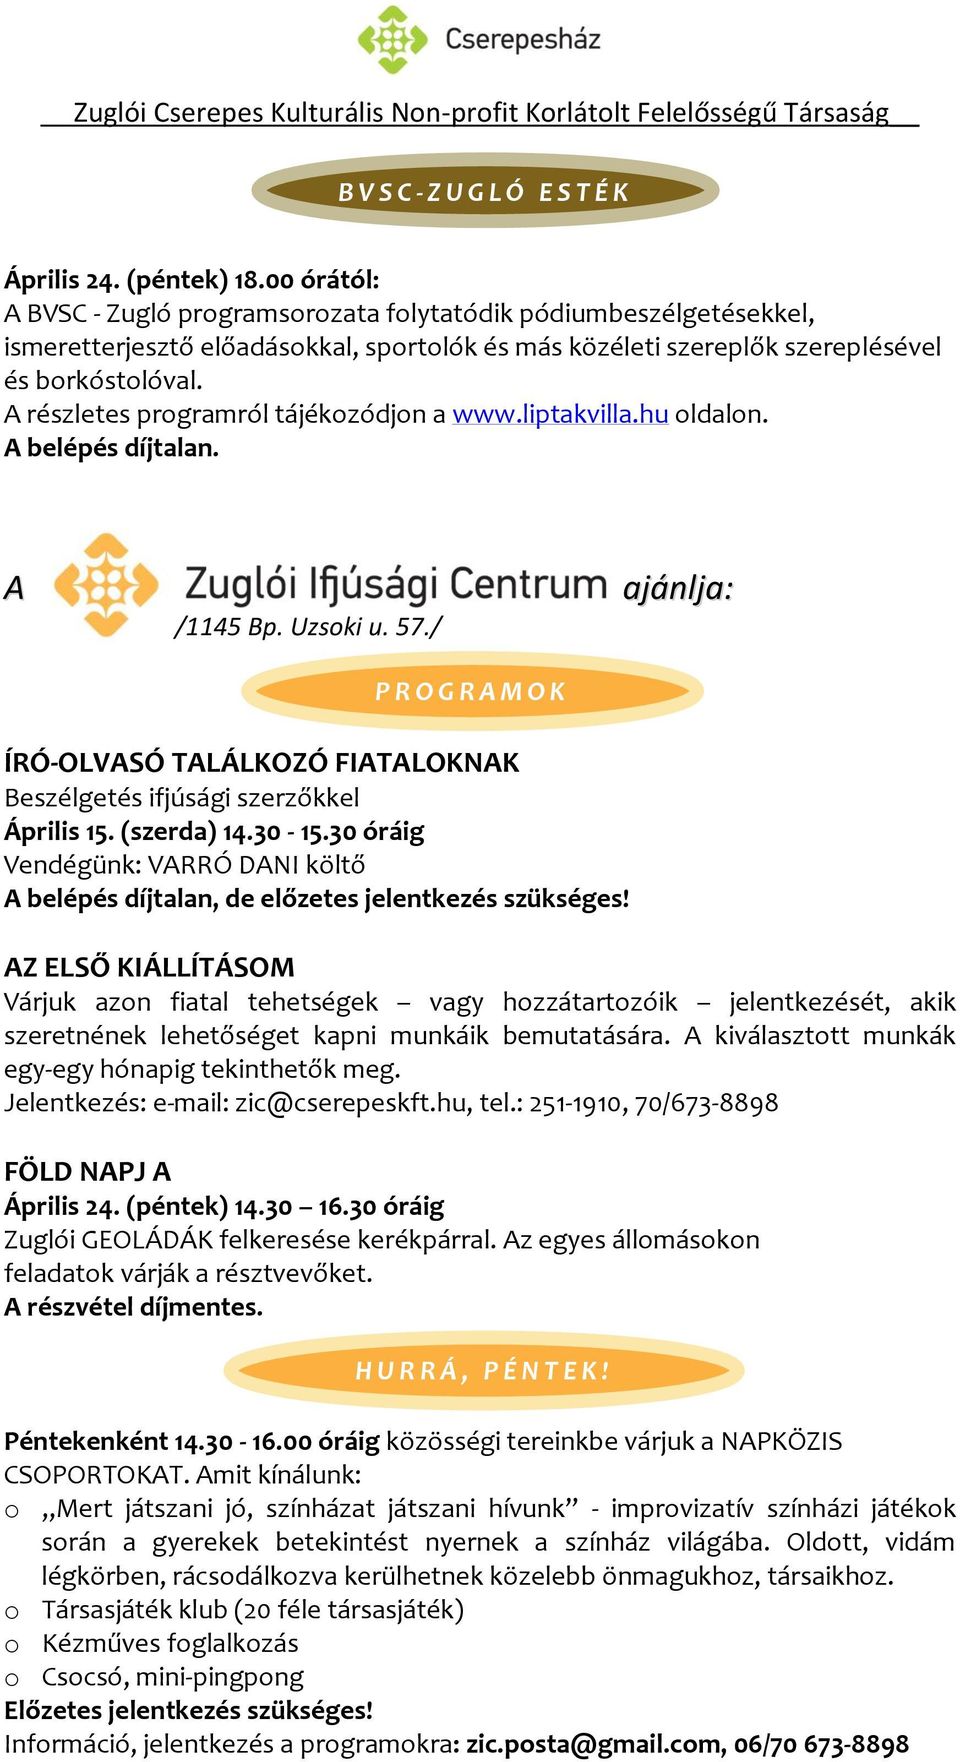 részletes programról tájékozódjon a www.liptakvilla.hu oldalon. belépés díjtalan. /1145 Bp. Uzsoki u. 57.